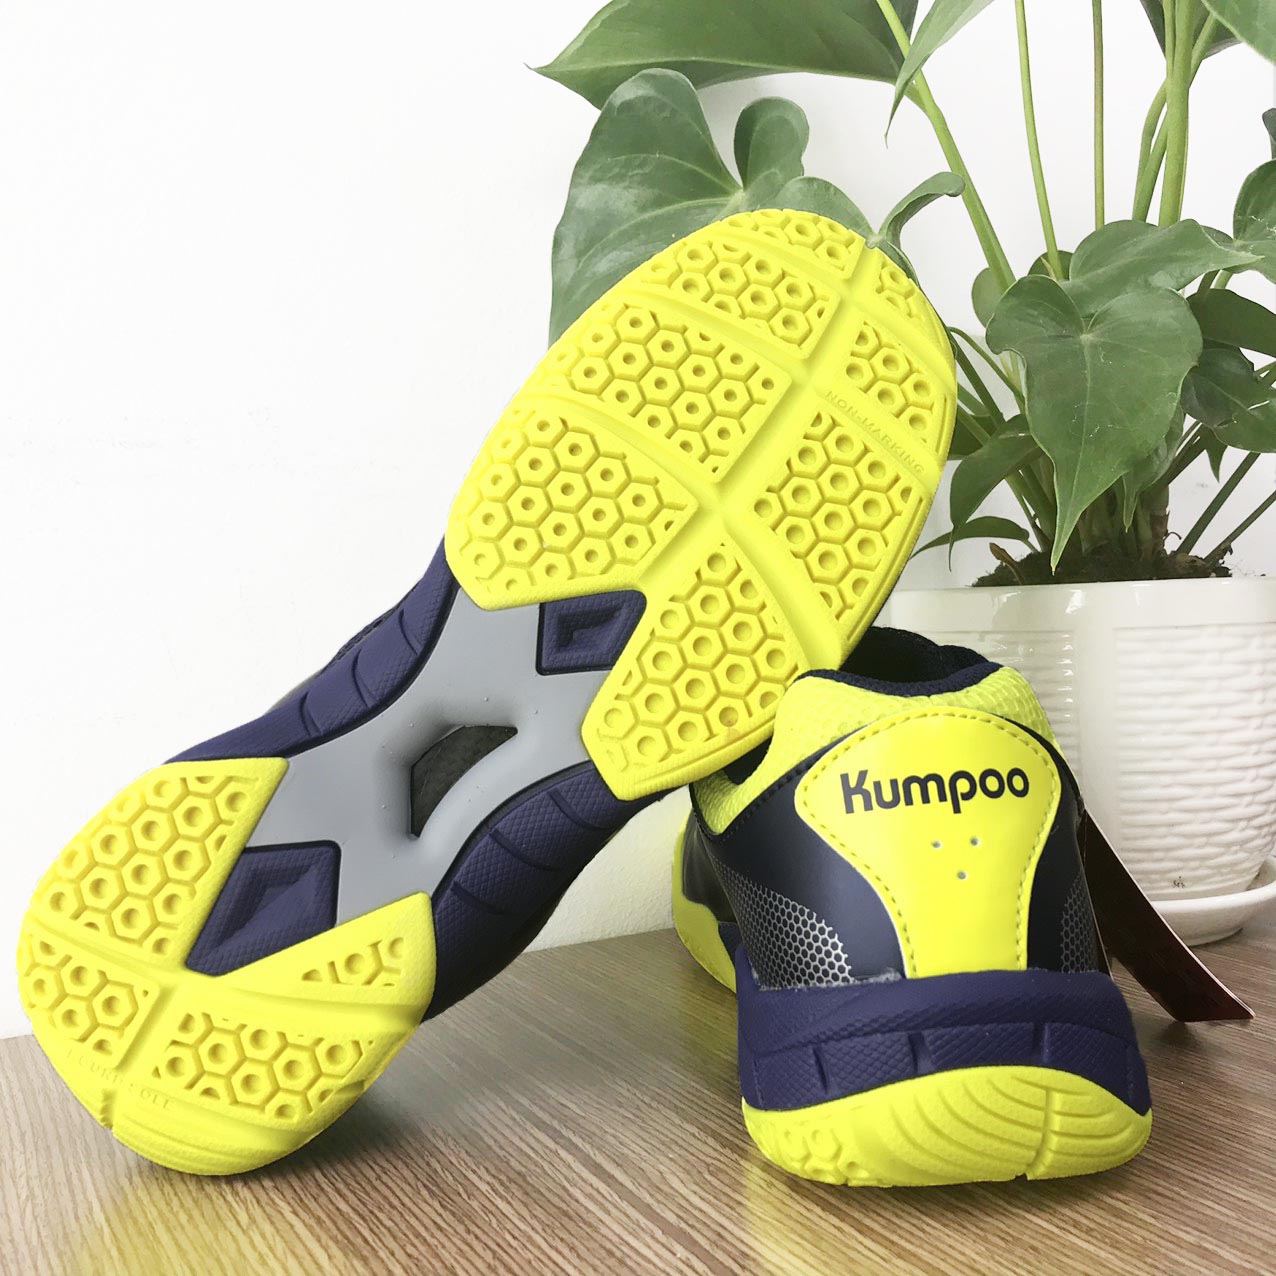 Giày bóng chuyền nam nữ chuyên dụng kumpoo KH-E23